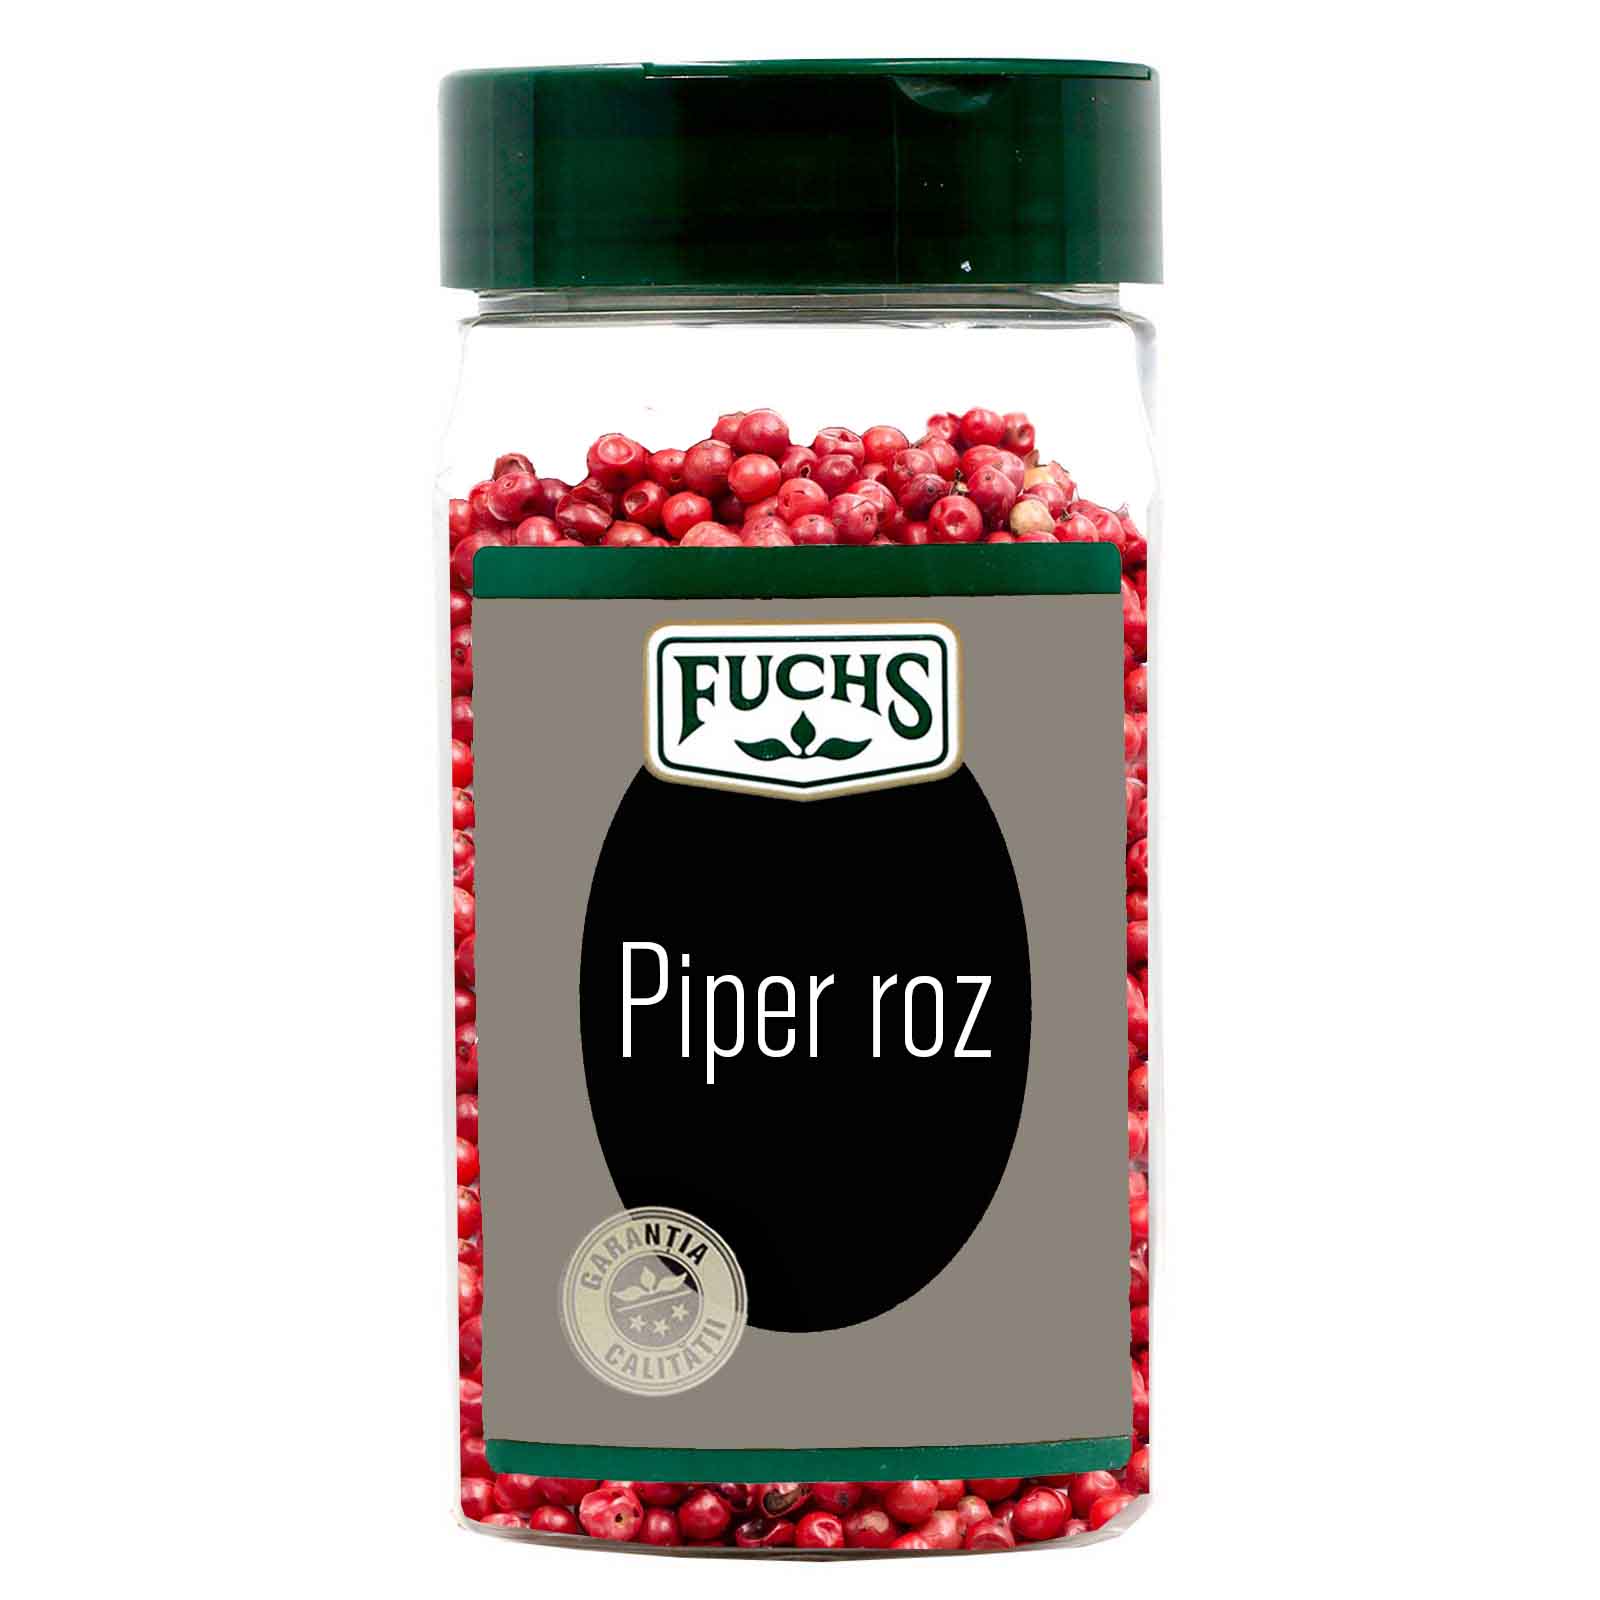 Piper roz, Fuchs, 100 g